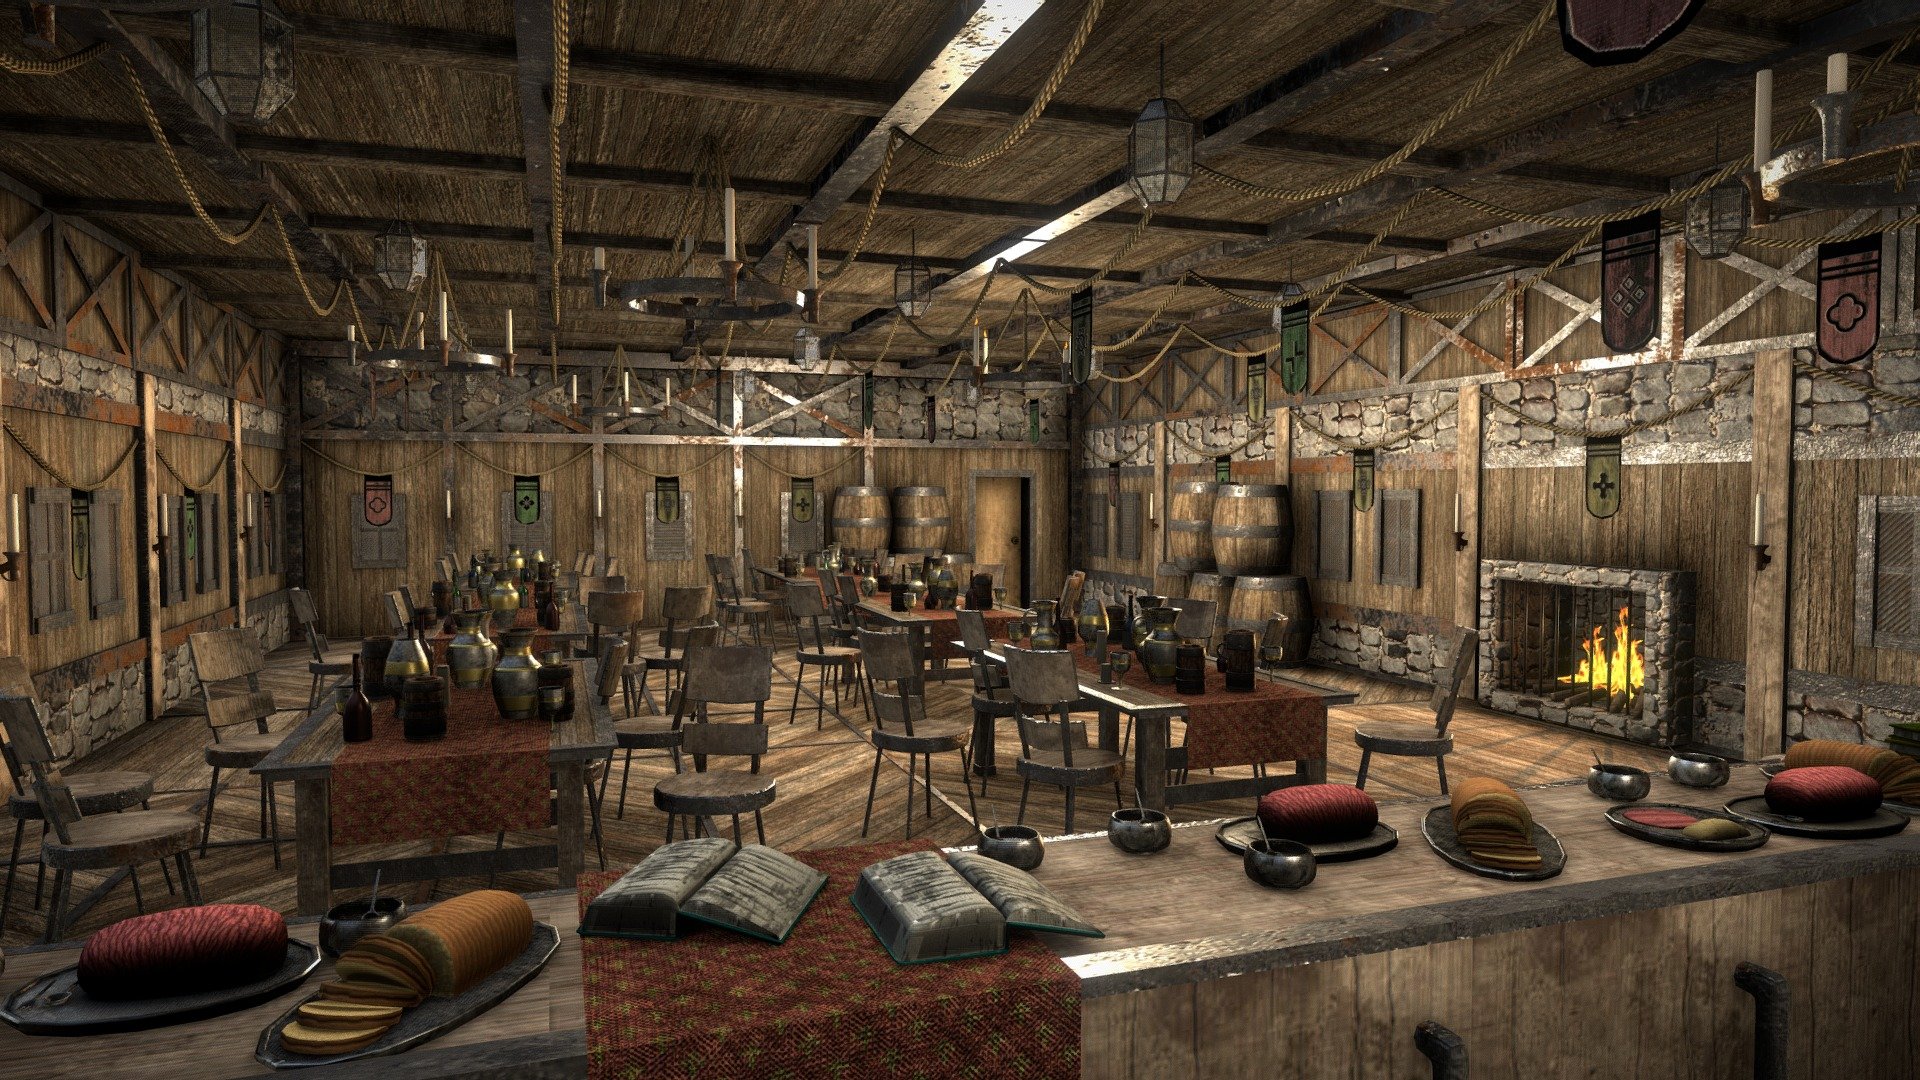 Medieval Tavern Interior - 3D model by Renocrade [8871600] - Sketchfab